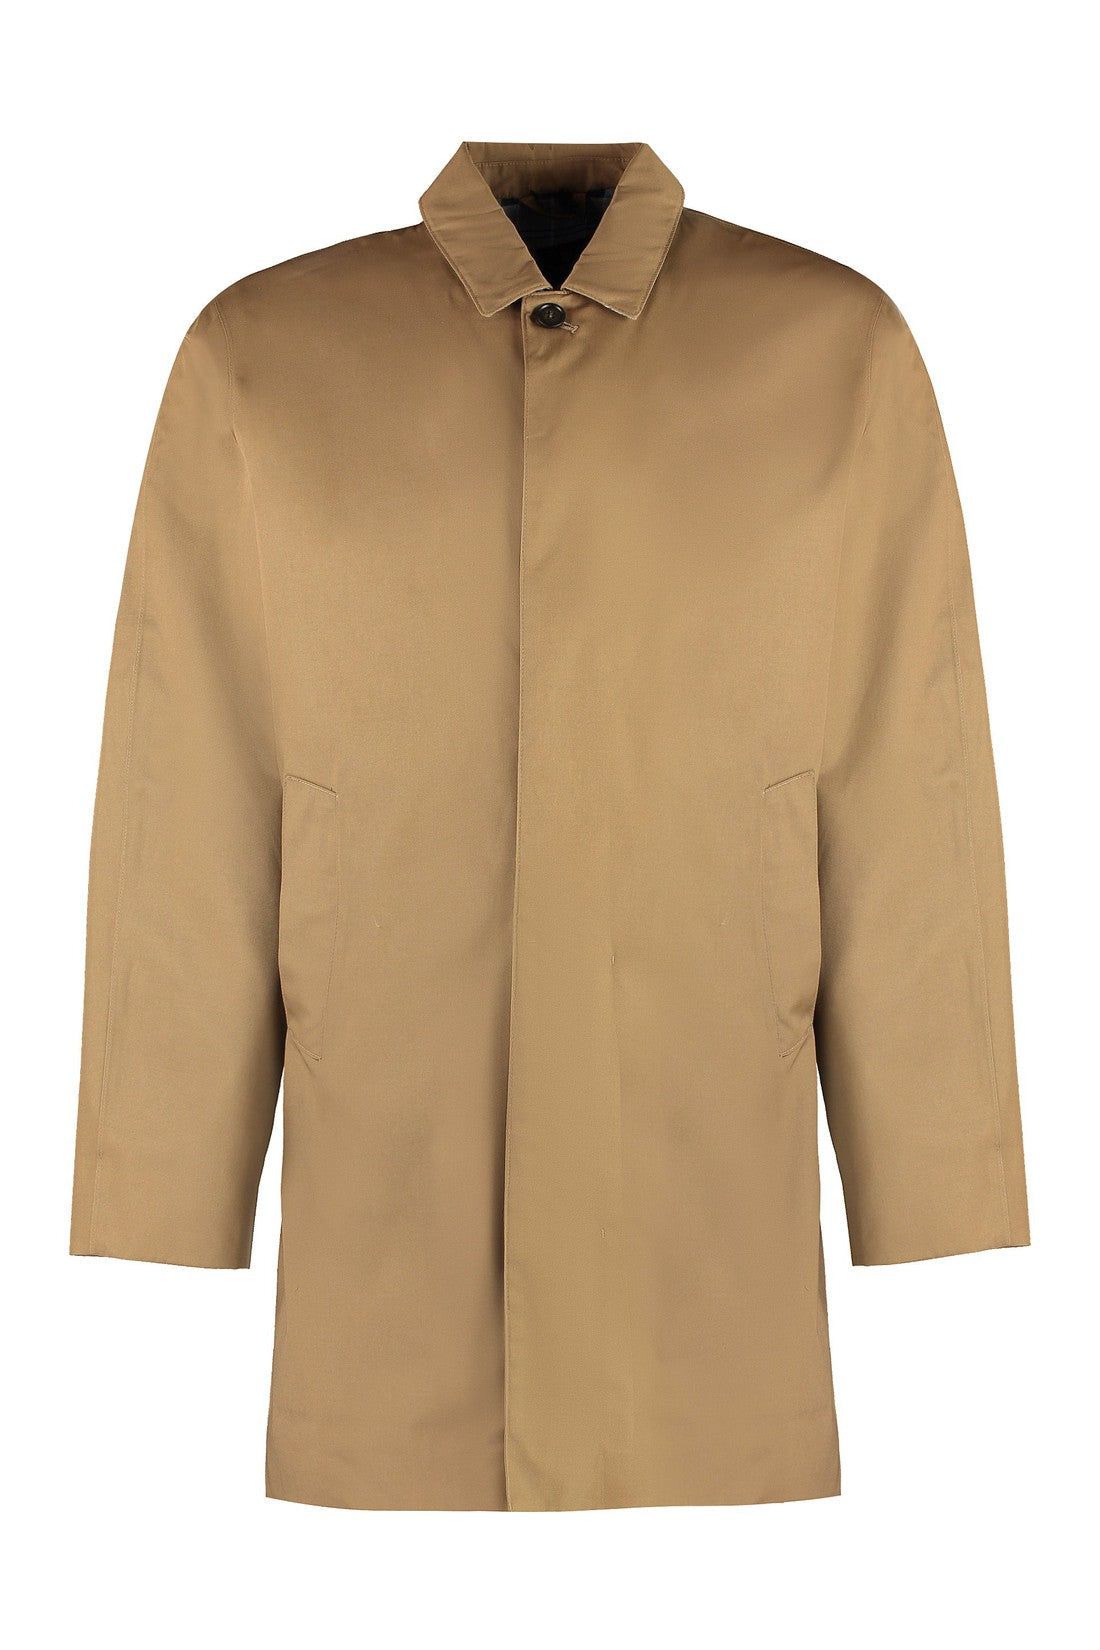 Barbour-OUTLET-SALE-Rokig button-front cotton jacket-ARCHIVIST